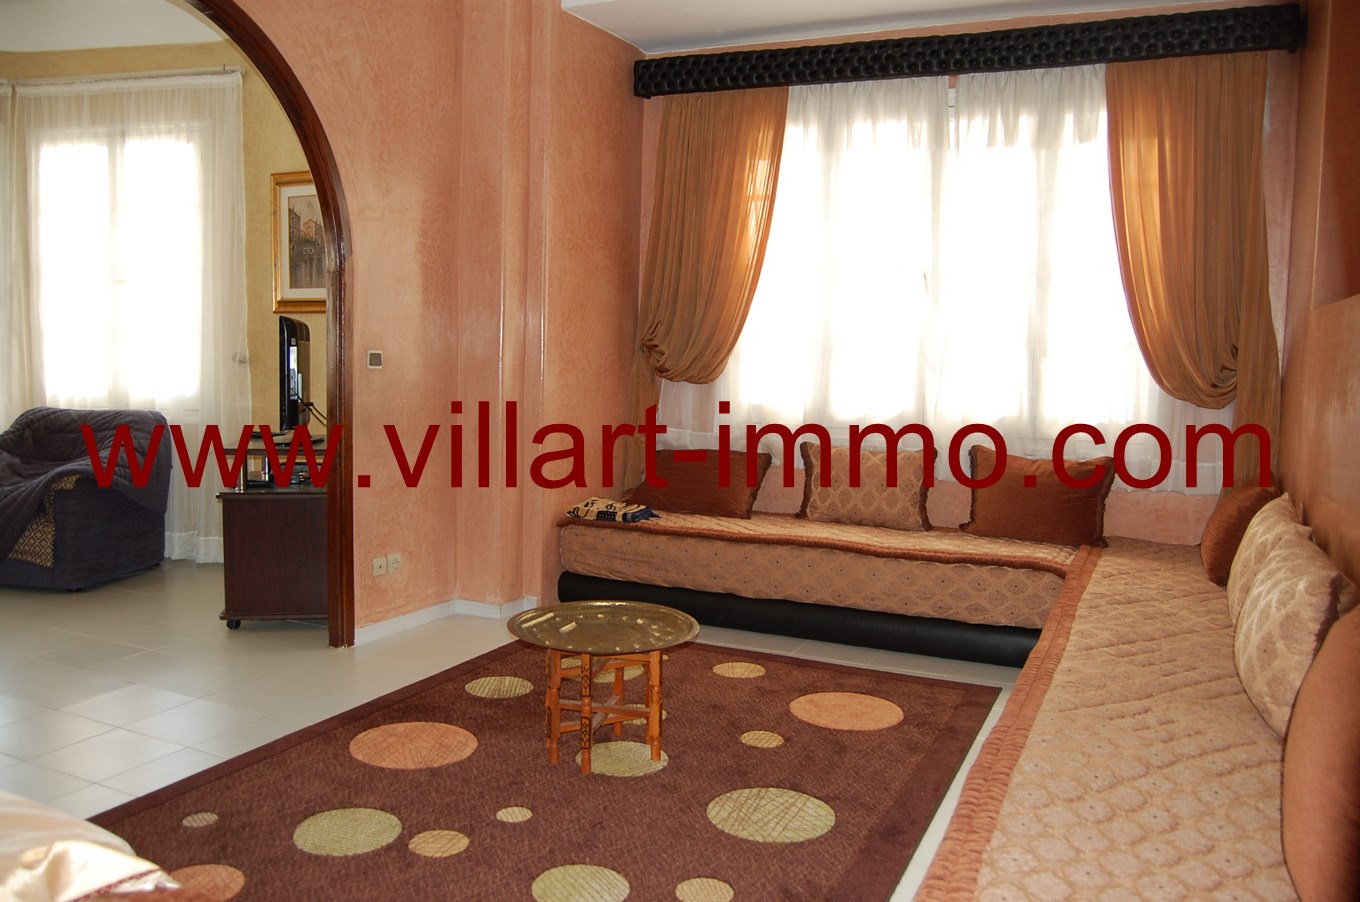 4-Location-Appartement-meublé-Tanger-salon -L673-Villart-immo